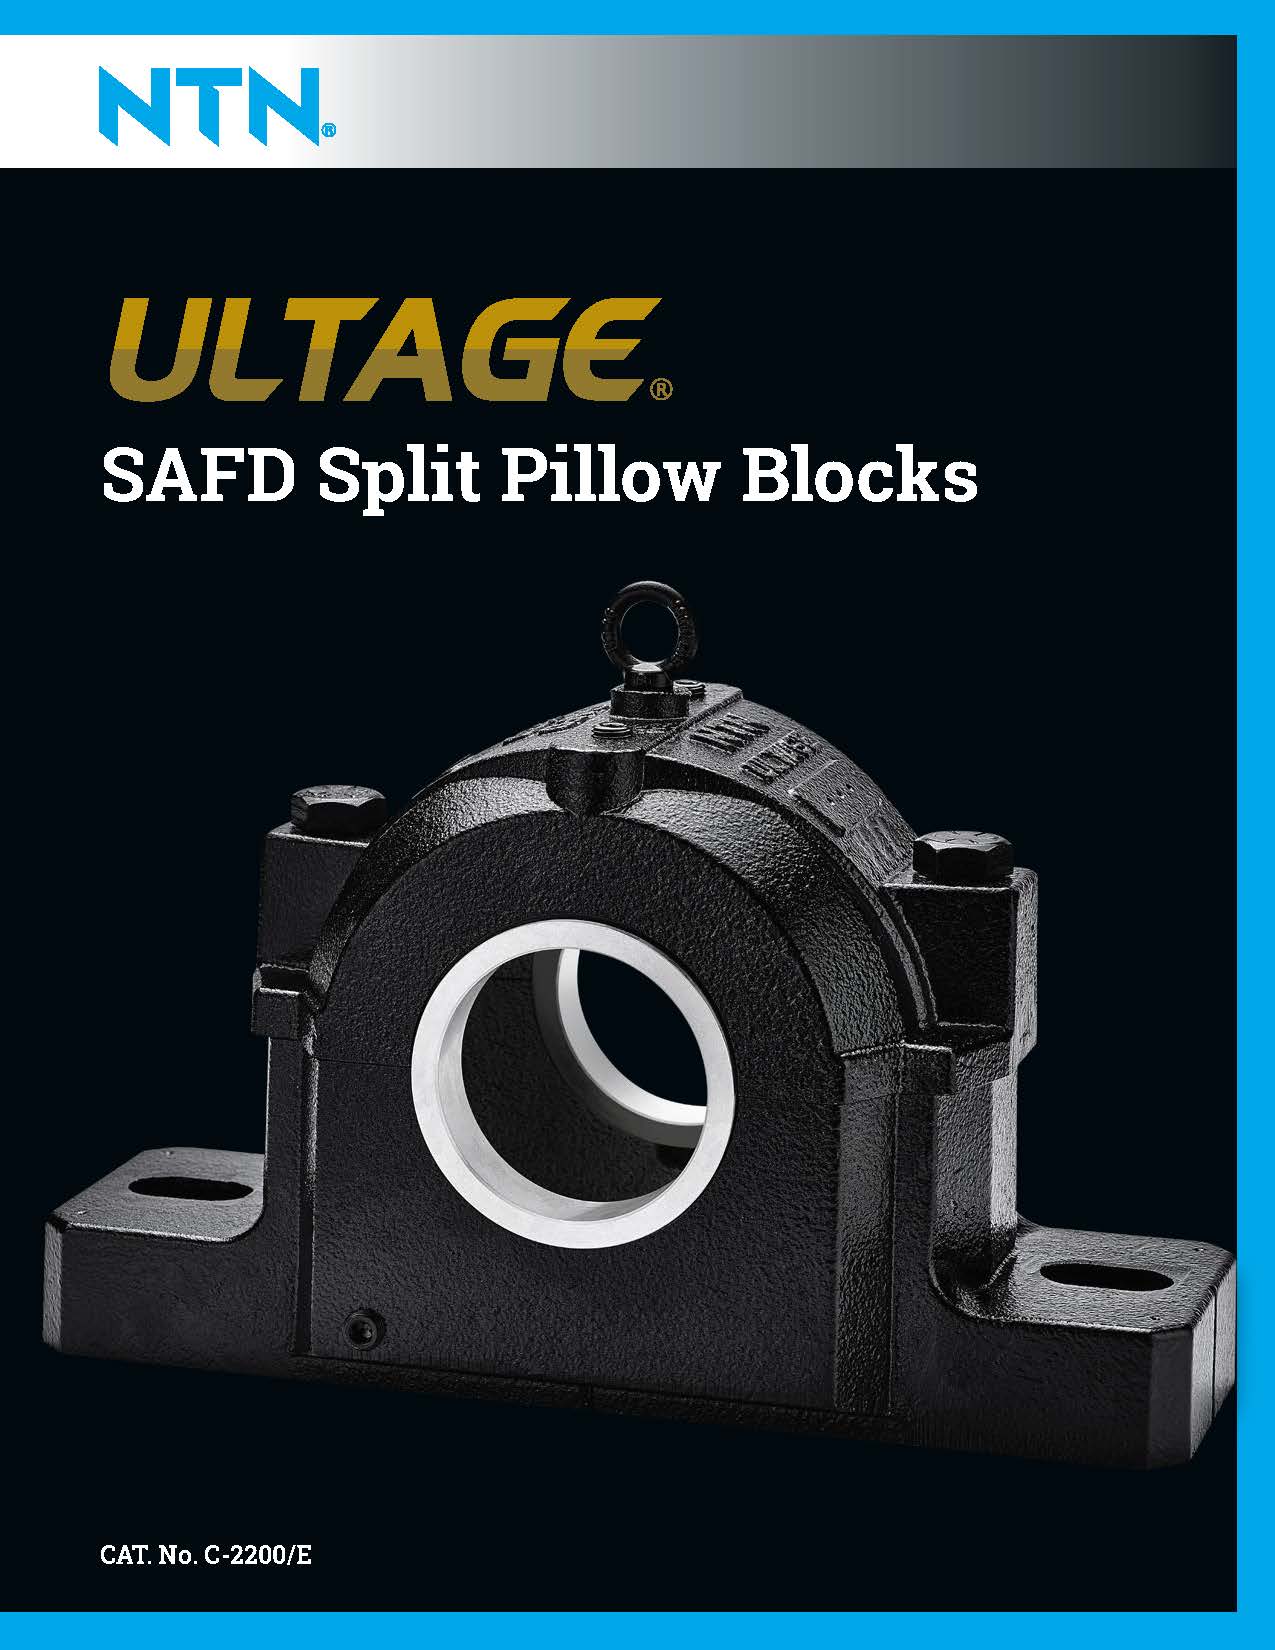 NTN ULTAGE SAFD Split Pillow Blocks EN Page 01 1